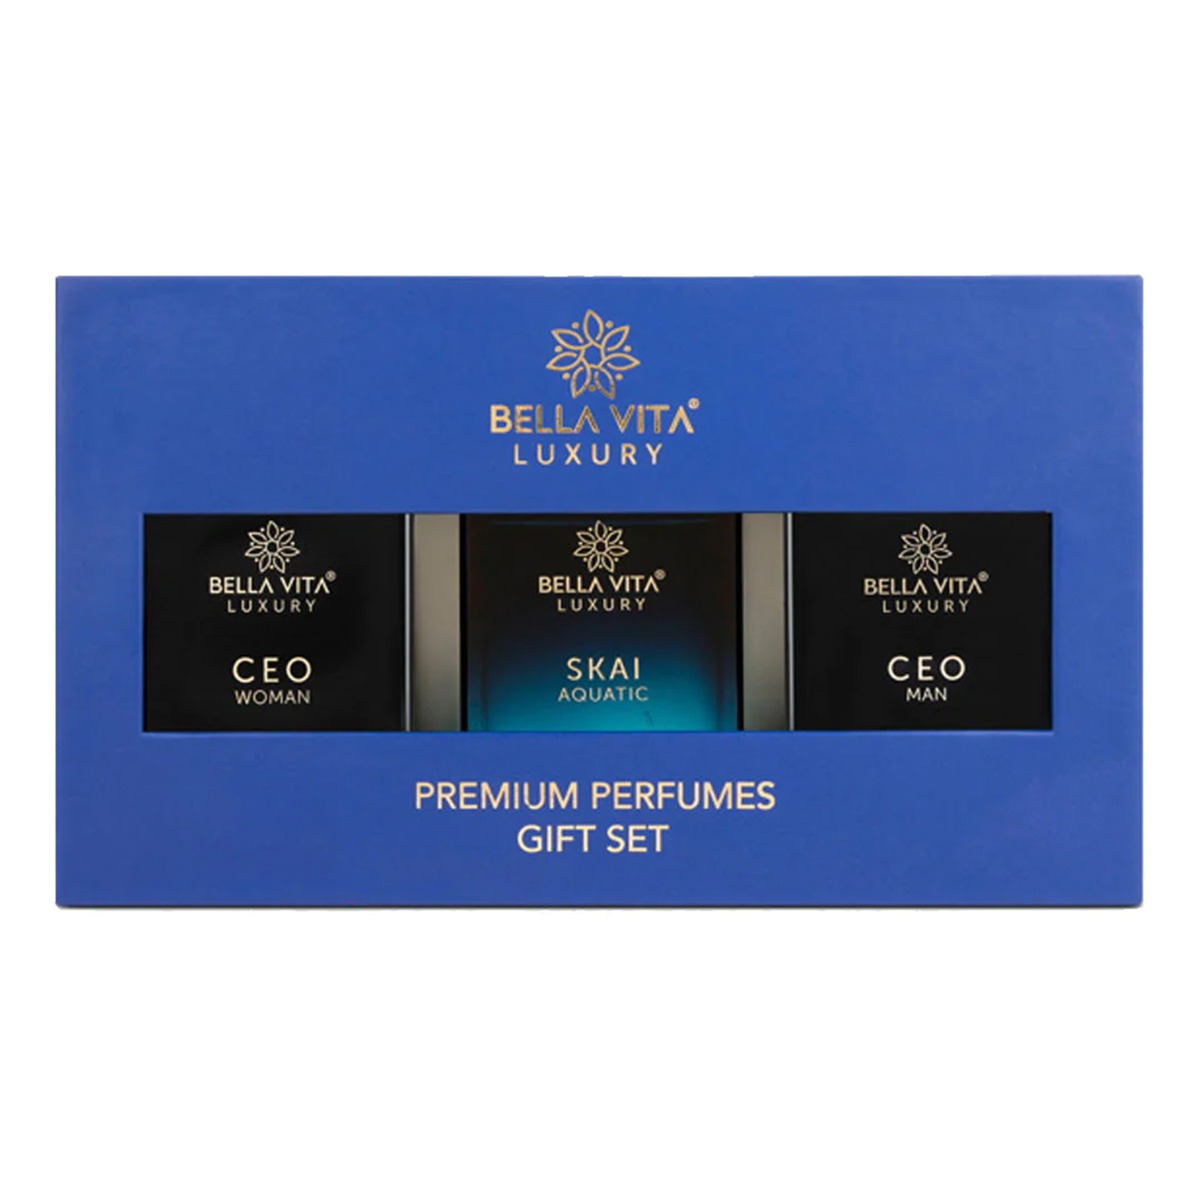 Bella Vita Gift Set Premium Parfum Ceo Man, Skai Aquatic & Ceo Women - Pack Of 3, 1Pc